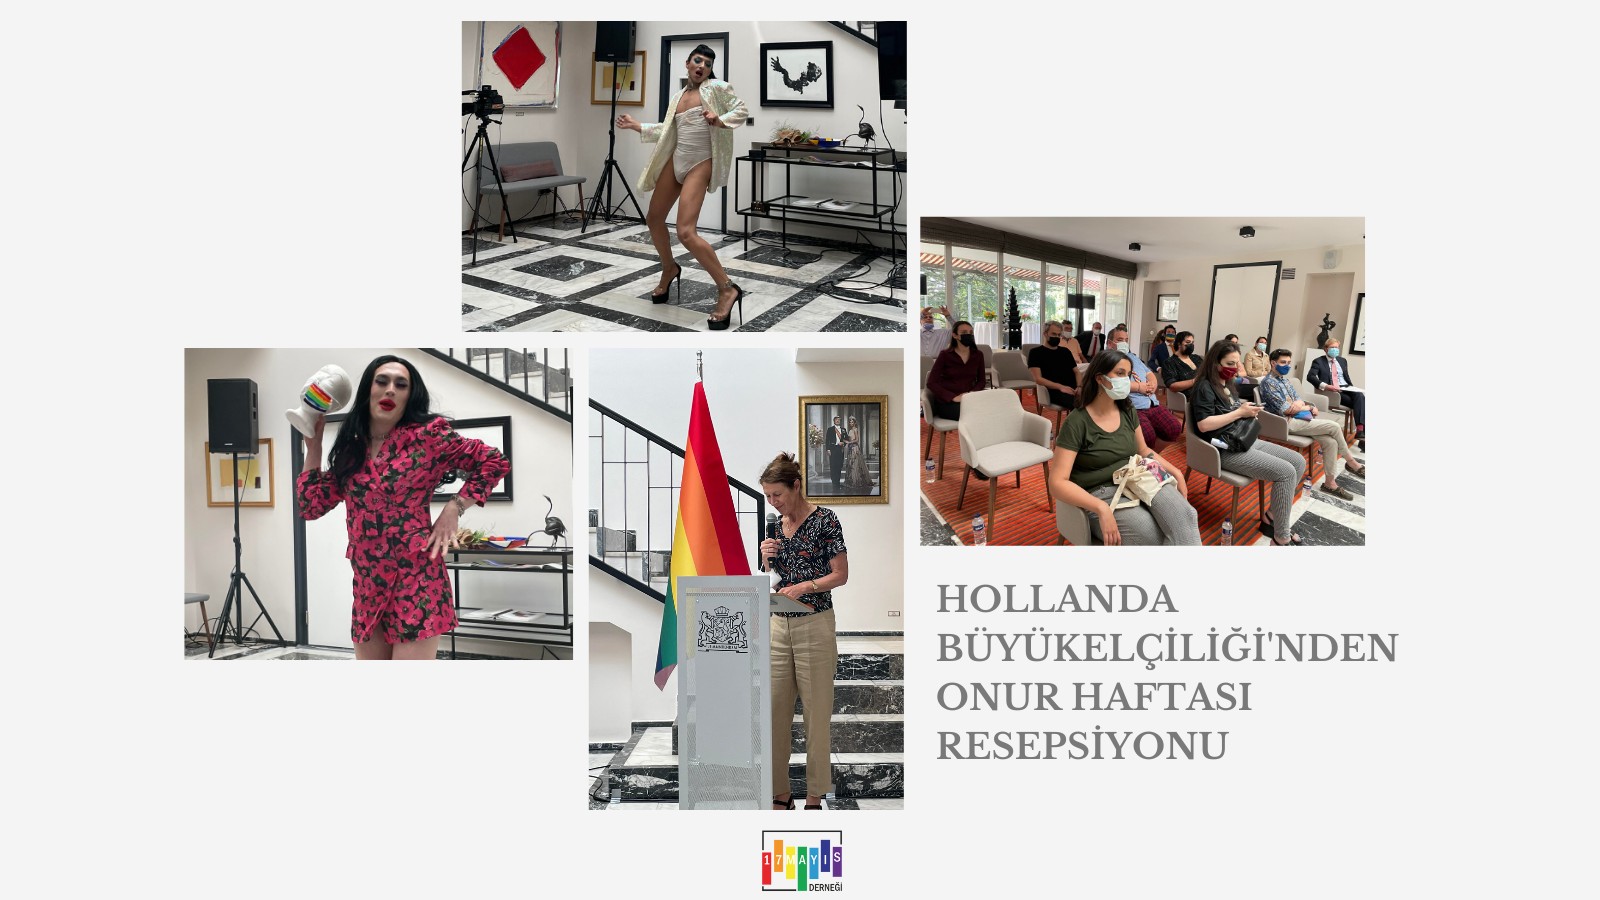 Hollanda Büyükelçiliği'nden Onur Haftası Resepsiyonu! - 17 Mayıs